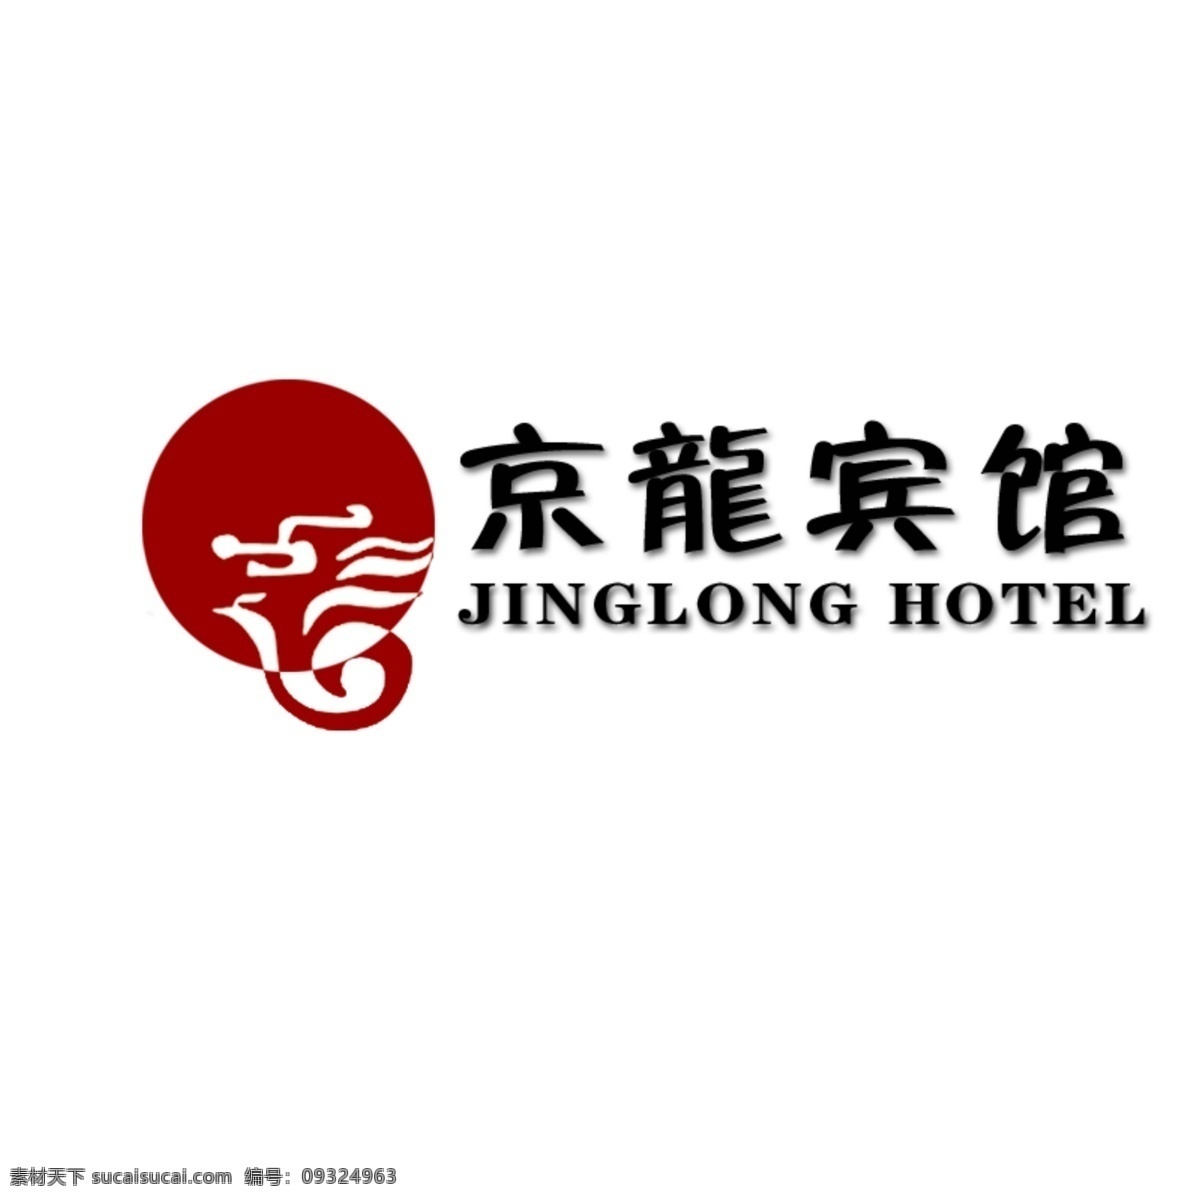 京龙 宾馆 logo 标志设计 广告设计模板 源文件 psd源文件 logo设计